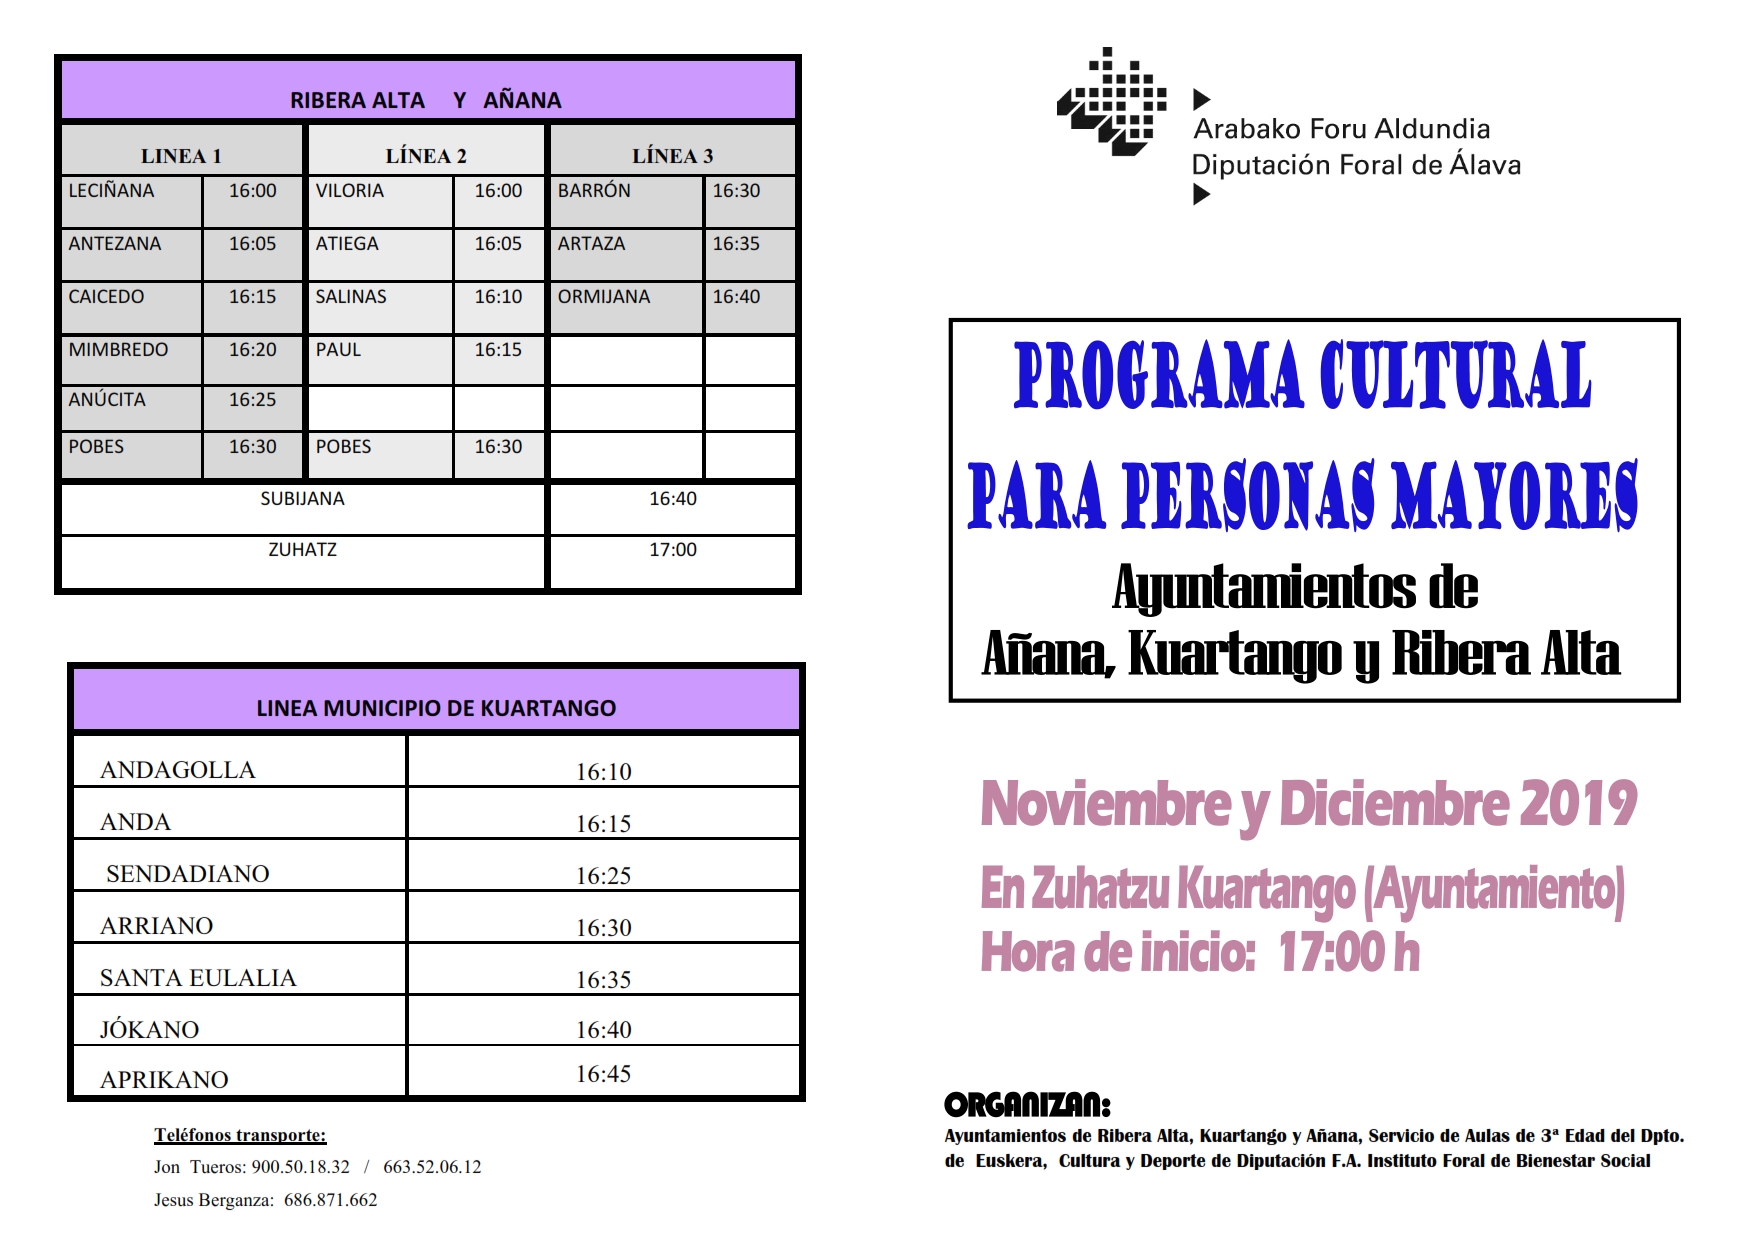 Programa de AULAS CULTURALES PARA PERSONAS MAYORES, NOVIEMBRE Y DICIEMBRE 2019, Ayuntamientos de Añana, Kuartango y Ribera Alta